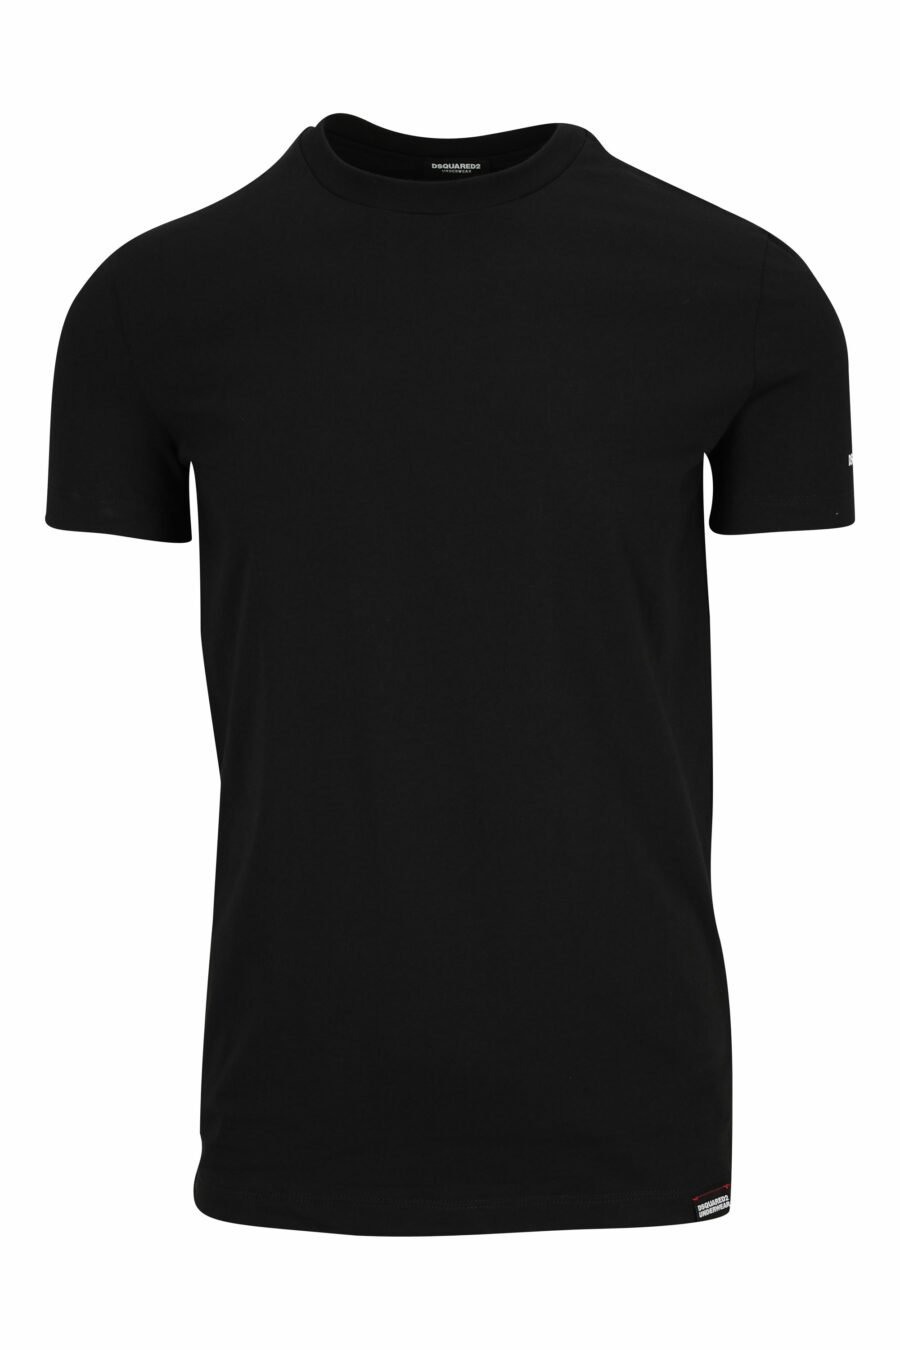 T-shirt preta com roupa interior branca minilogue - 8032674811509